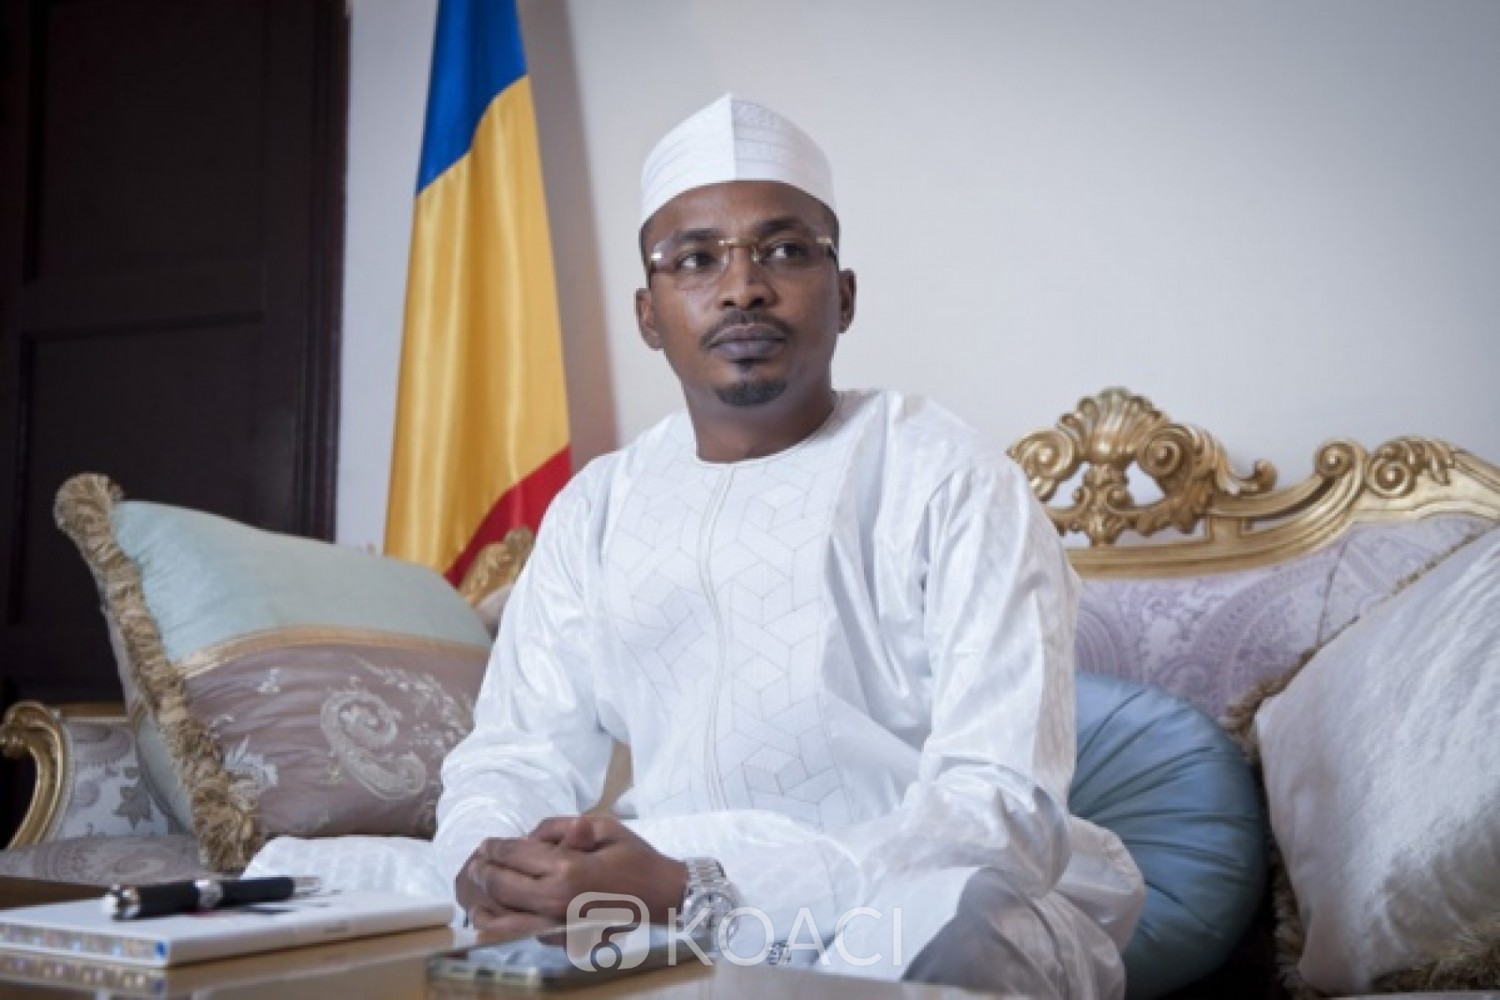 Tchad : Mahamat Idriss s'exprime sur la mort de son père « çà été un choc violent mais le chaos prédit ne s'est pas produit »